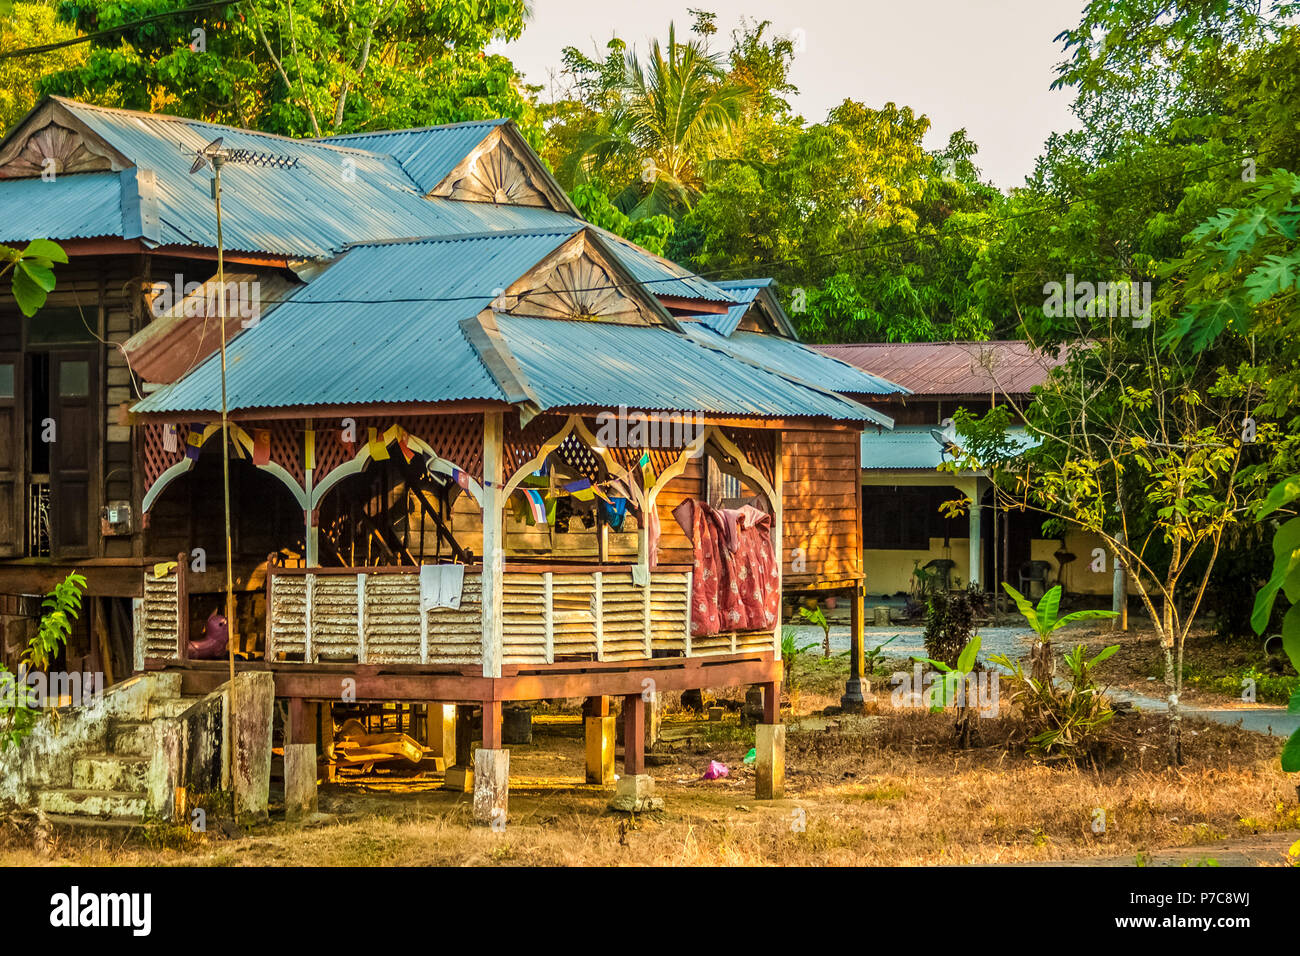 Un tradizionale in legno casa malese su palafitte con giardini tropicali adatta tetto, stendibiancheria su uno stendibiancheria; casa dei residenti locali sull'Isola di Langkawi... Foto Stock